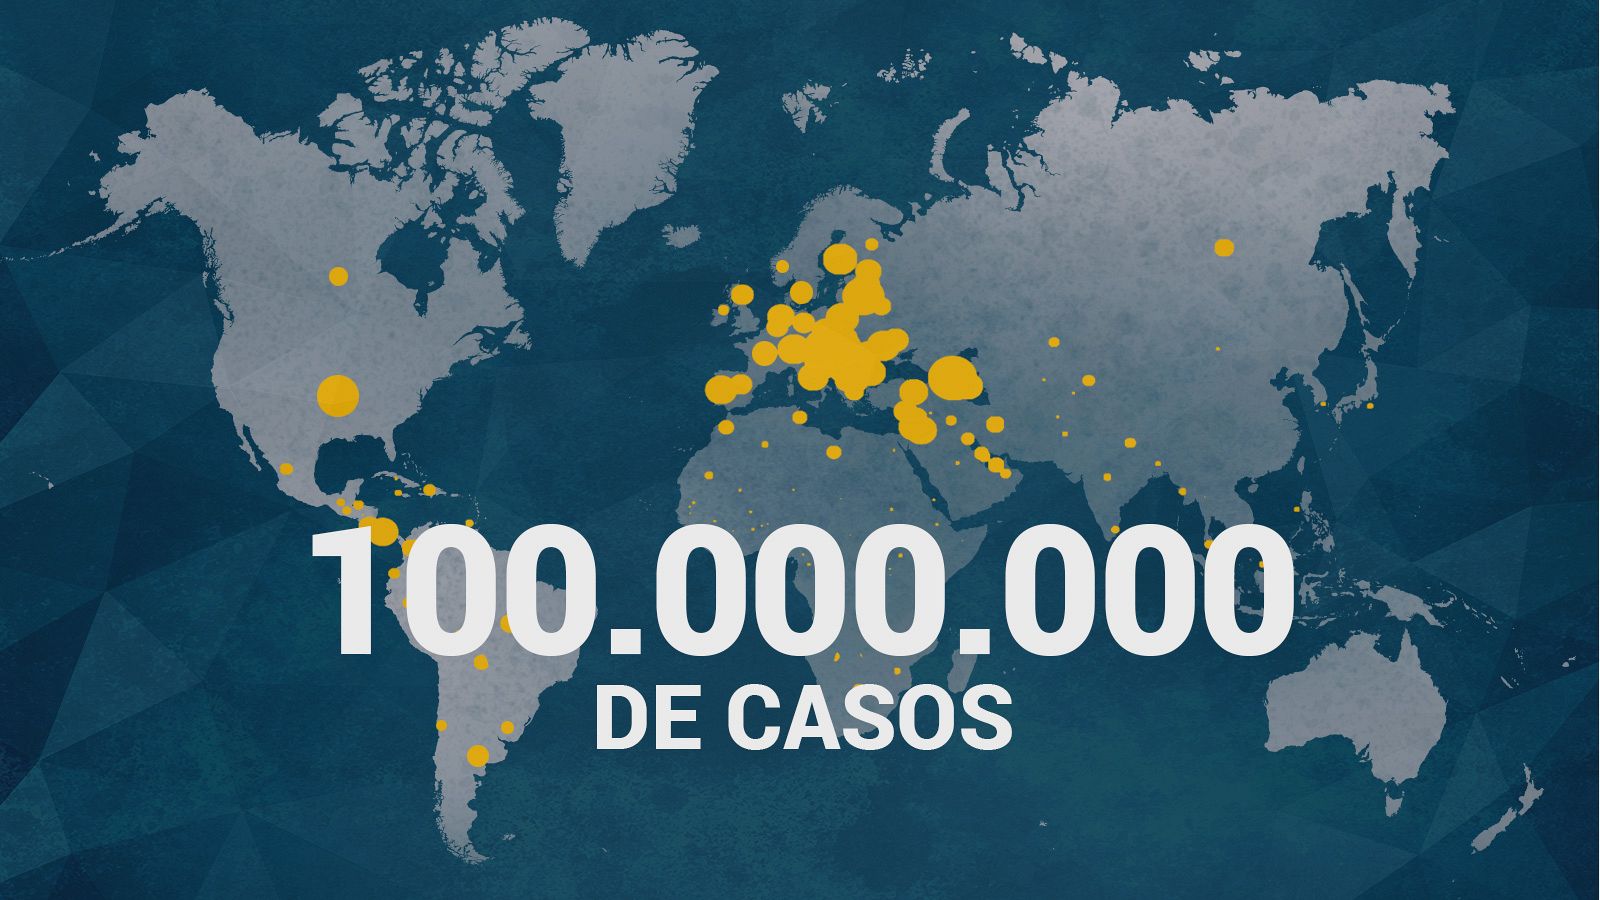 Con más de 100 millones de contagios en un año, el coronavirus se ha extendido por los cinco continentes.